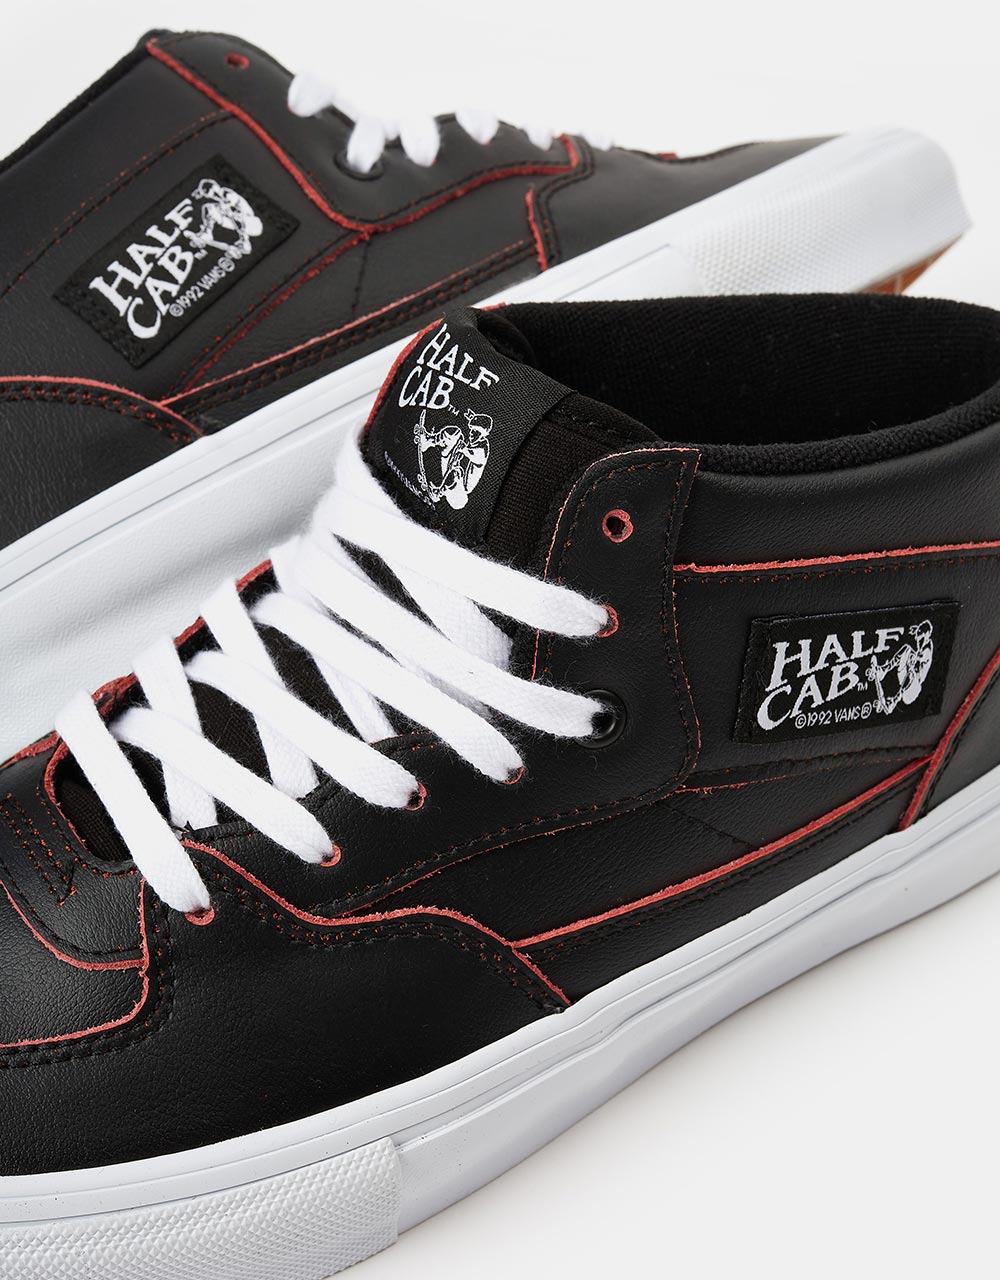 Vans Skate Half Cab R1 UK Exclusive Skate Shoes - (Wearaway) Black/White